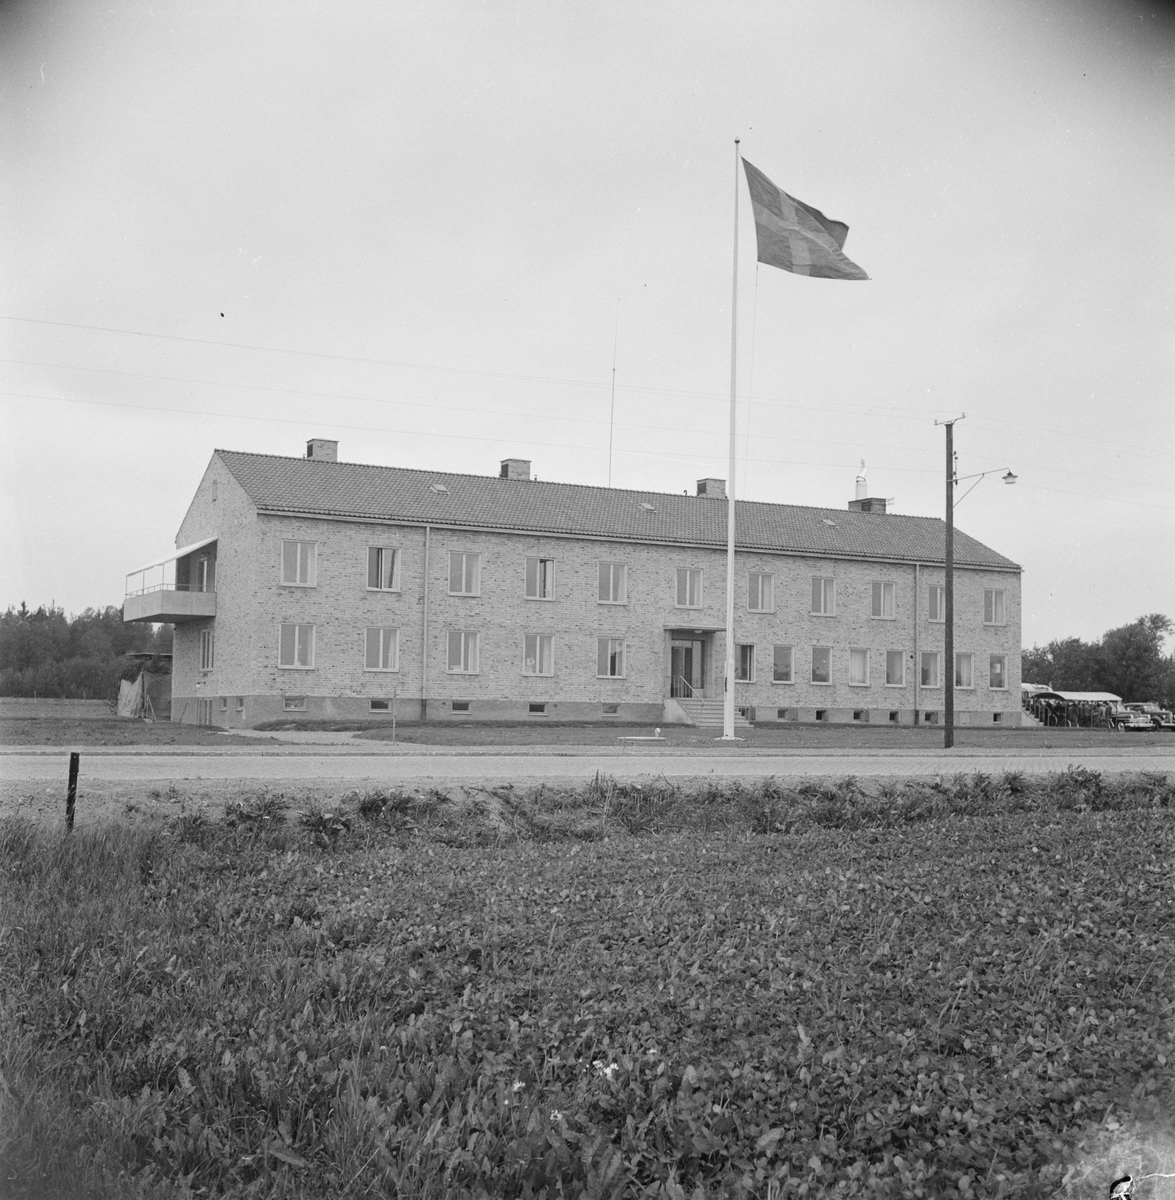 Invigning av sjukhuset, Tierp, Uppland 1948